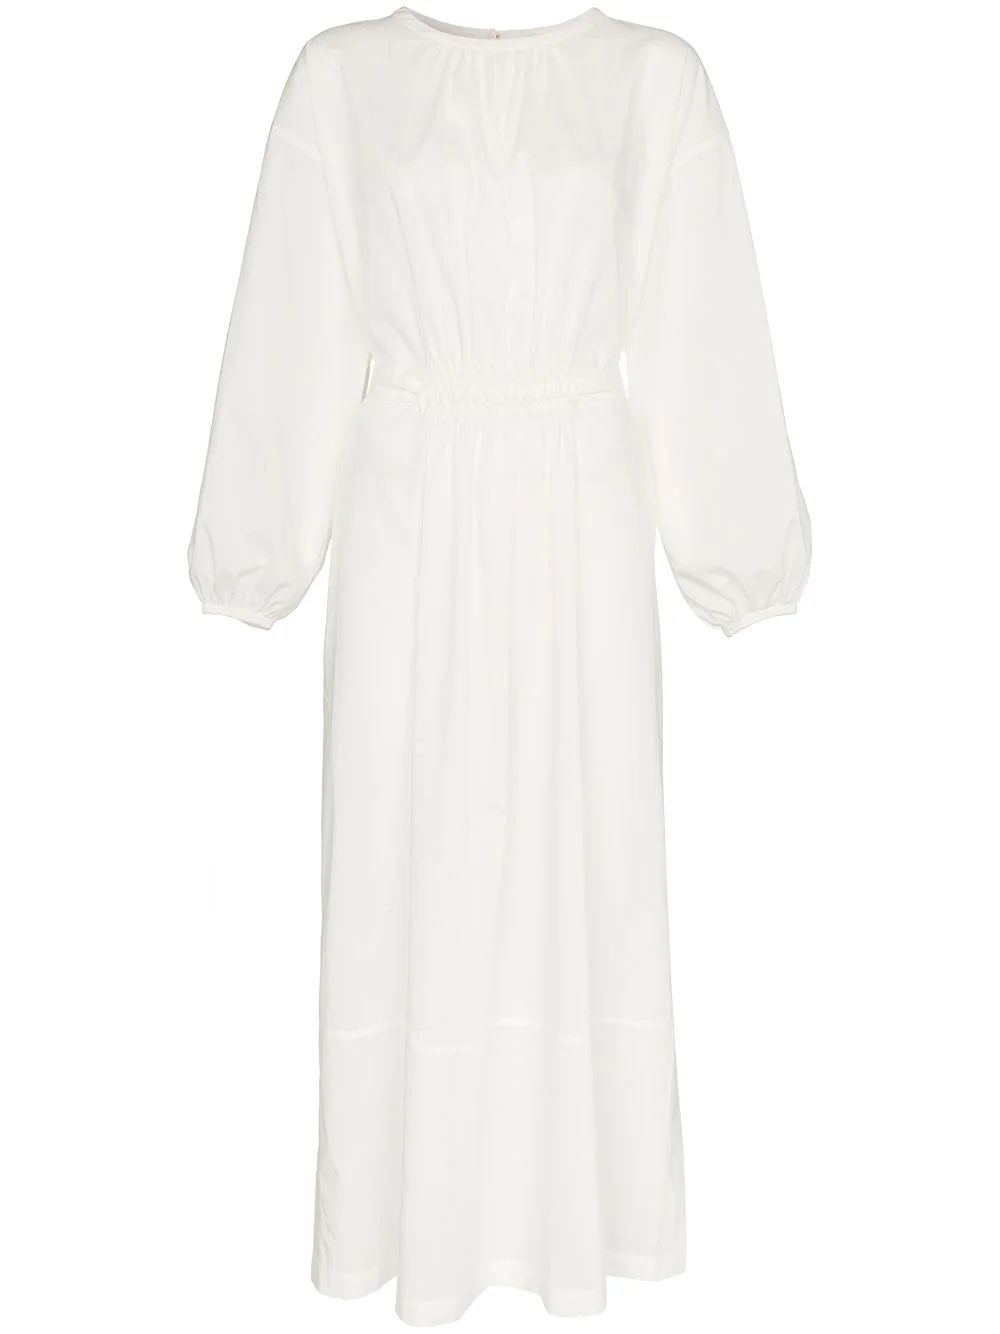 Matteau side split cotton dress - White | FarFetch Global